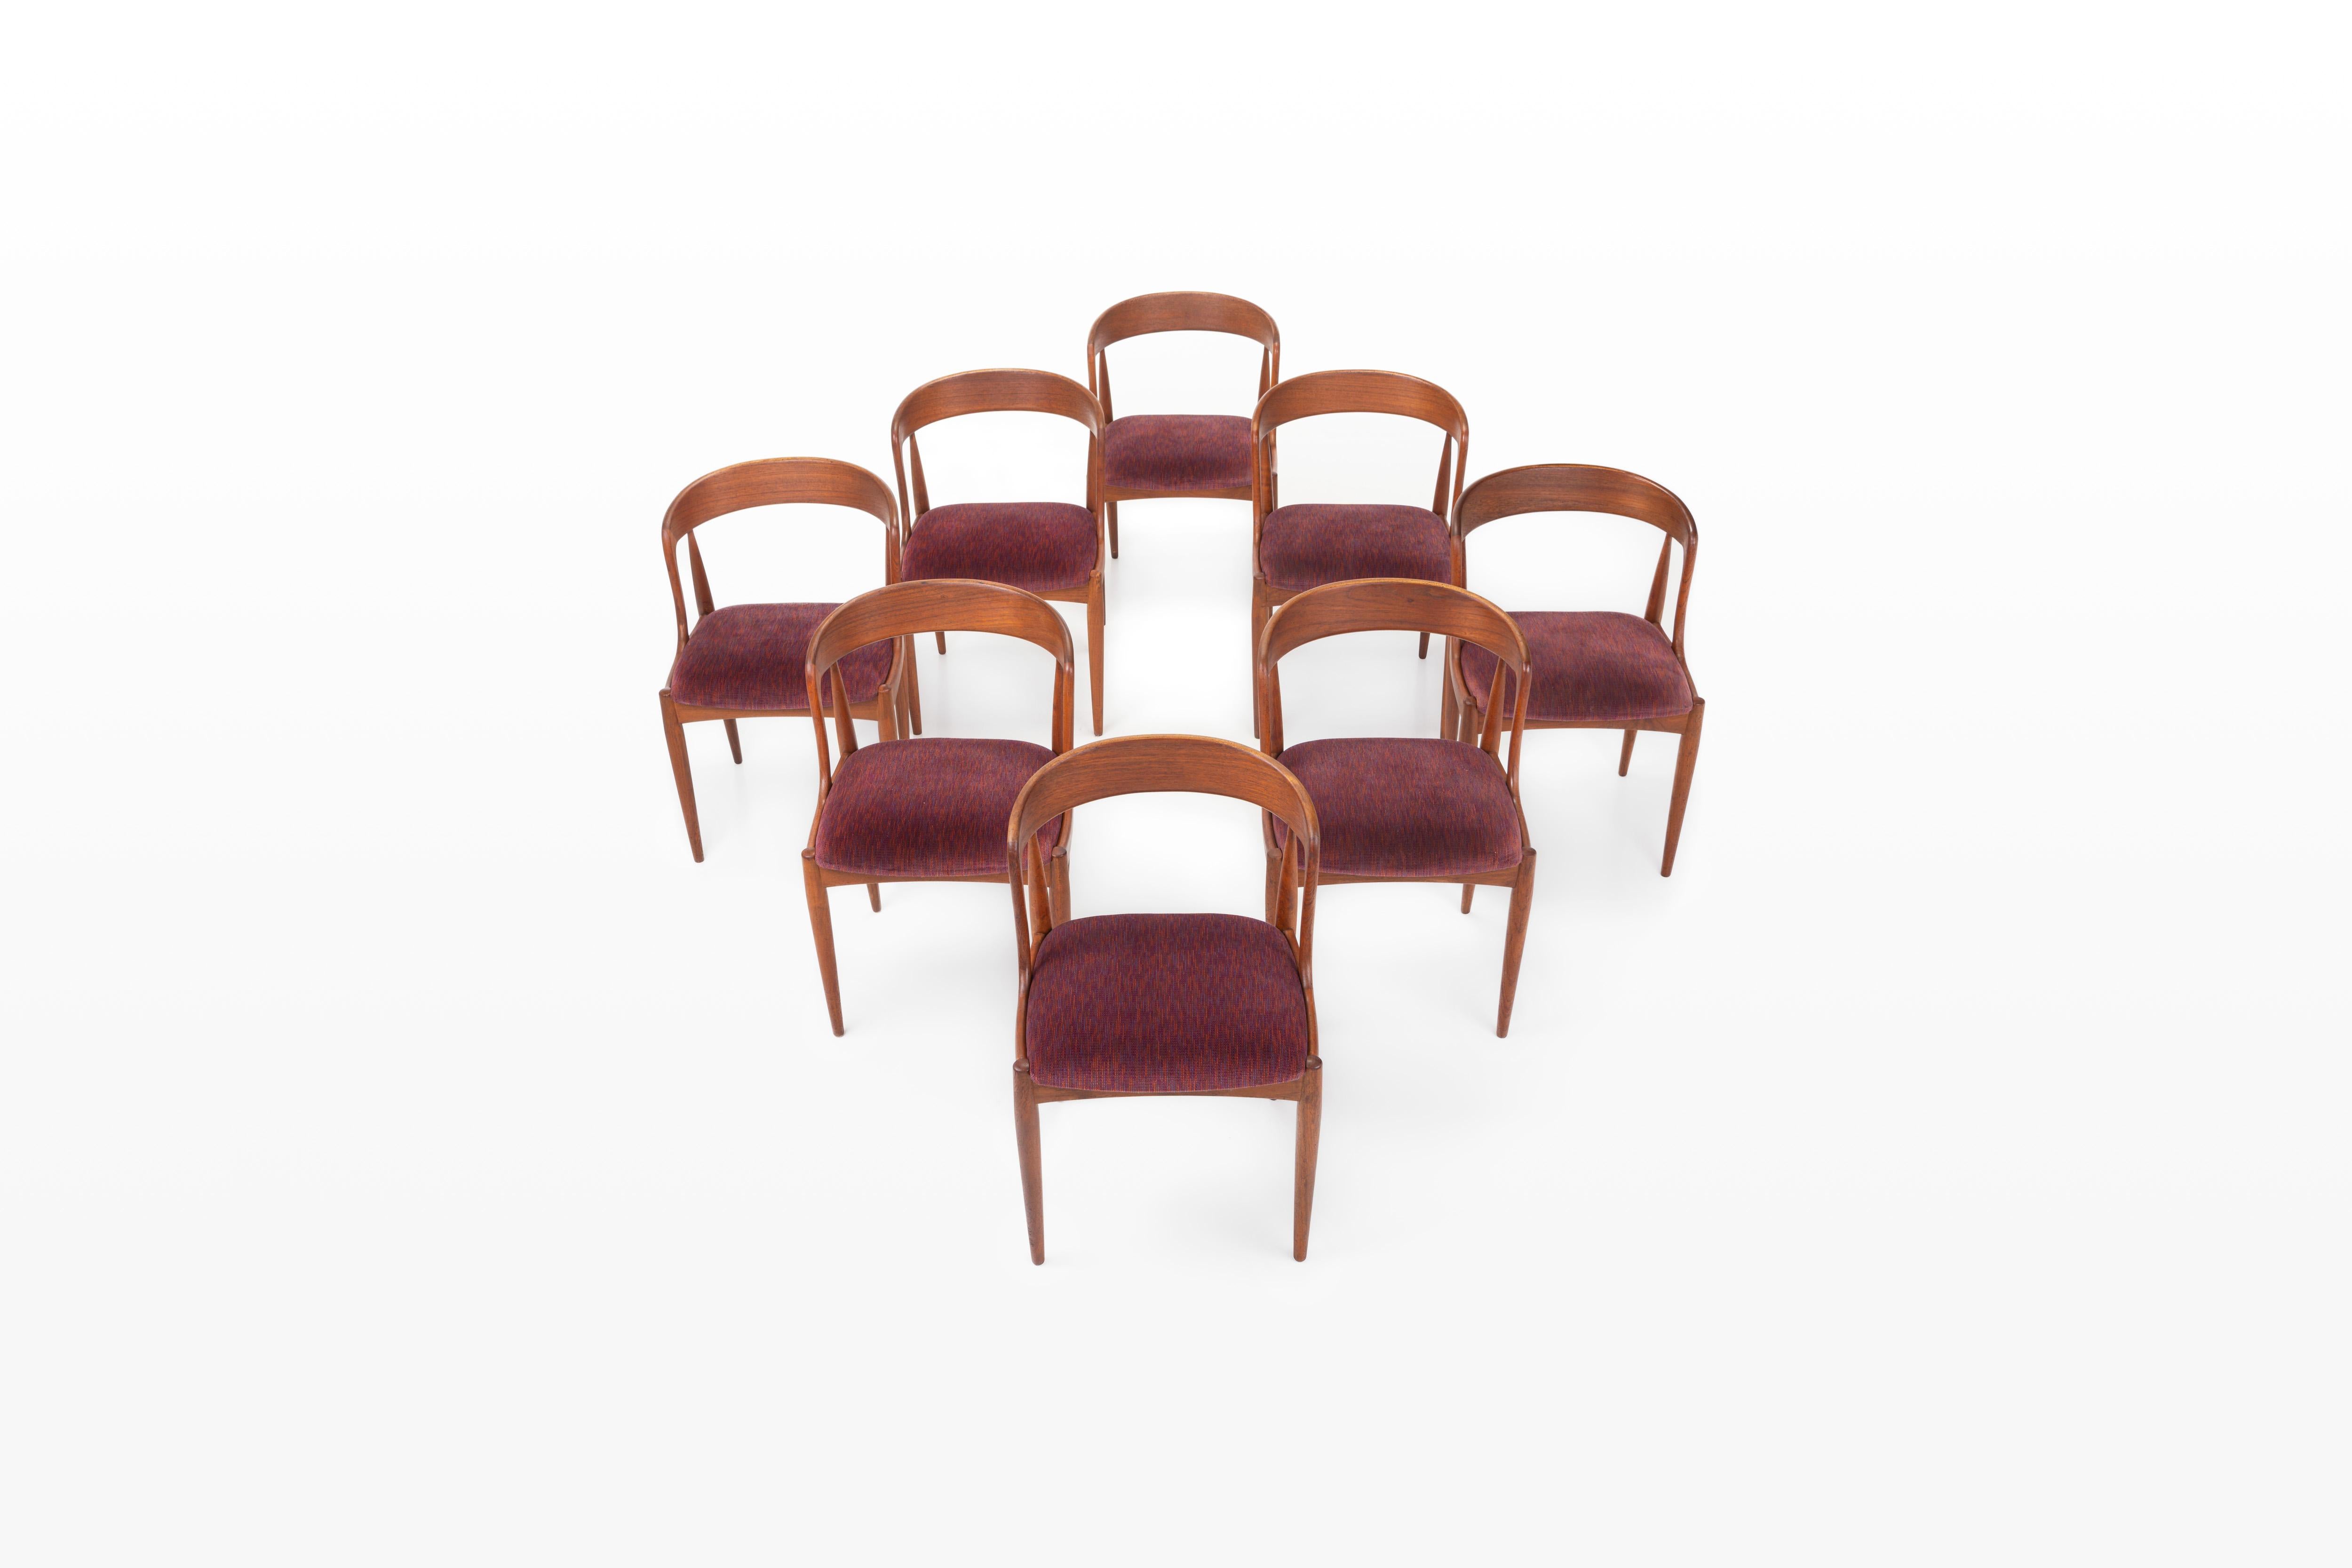 Ensemble de huit chaises de salle à manger vintage. Ces chaises ont été conçues par Johannes Andersen pour Uldum Møbelfabrik au Danemark. Ils ont un cadre en teck et un siège rouge-violet. Les chaises sont en très bon état.

Dimensions :
L : 50 cm
D